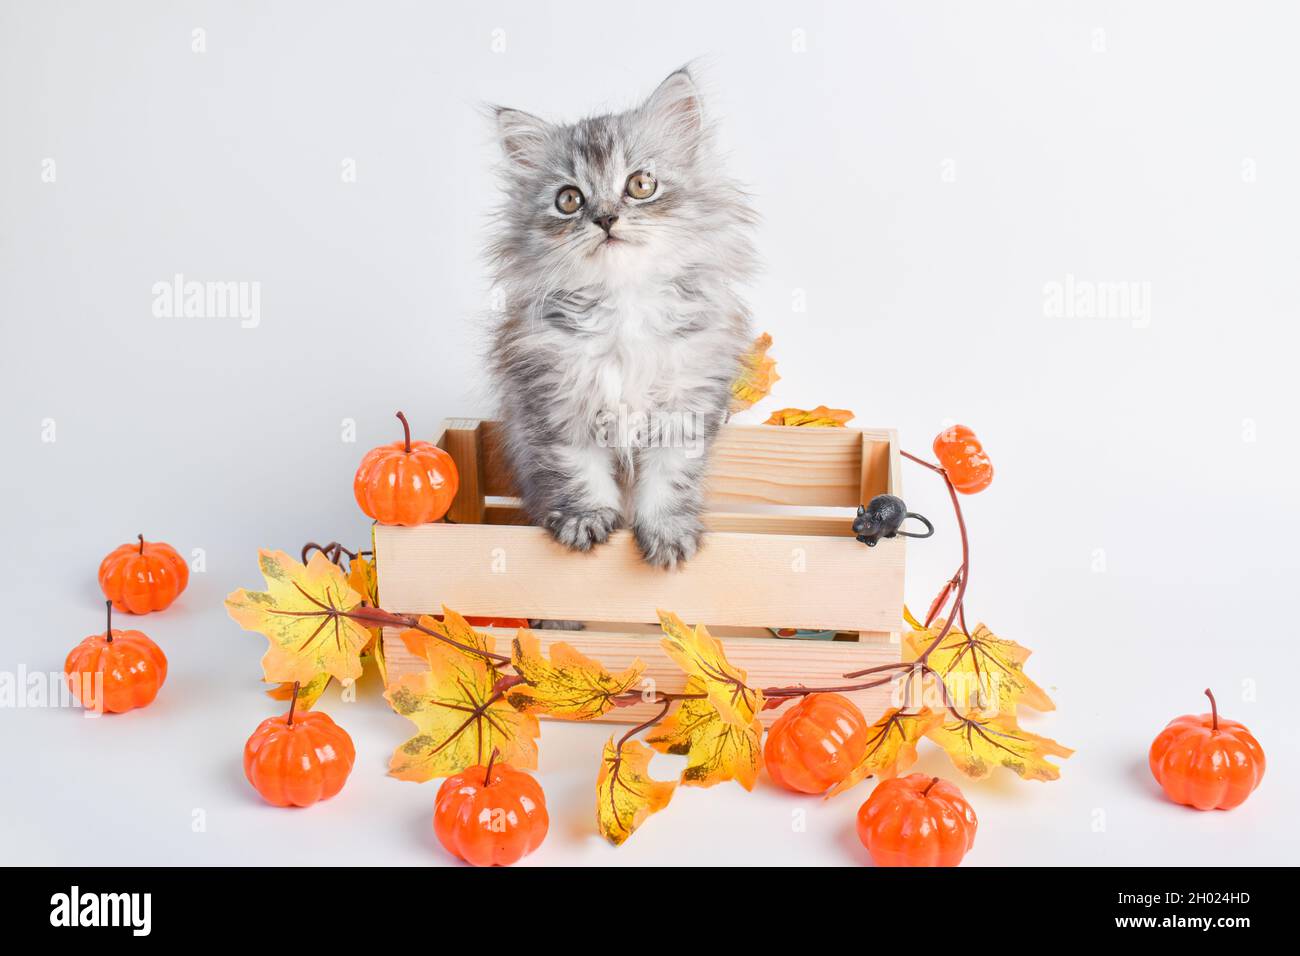 Ein süßes flauschiges graues Kätzchen sitzt in einer Holzkiste neben Kürbissen. Frohe Halloween. Stockfoto